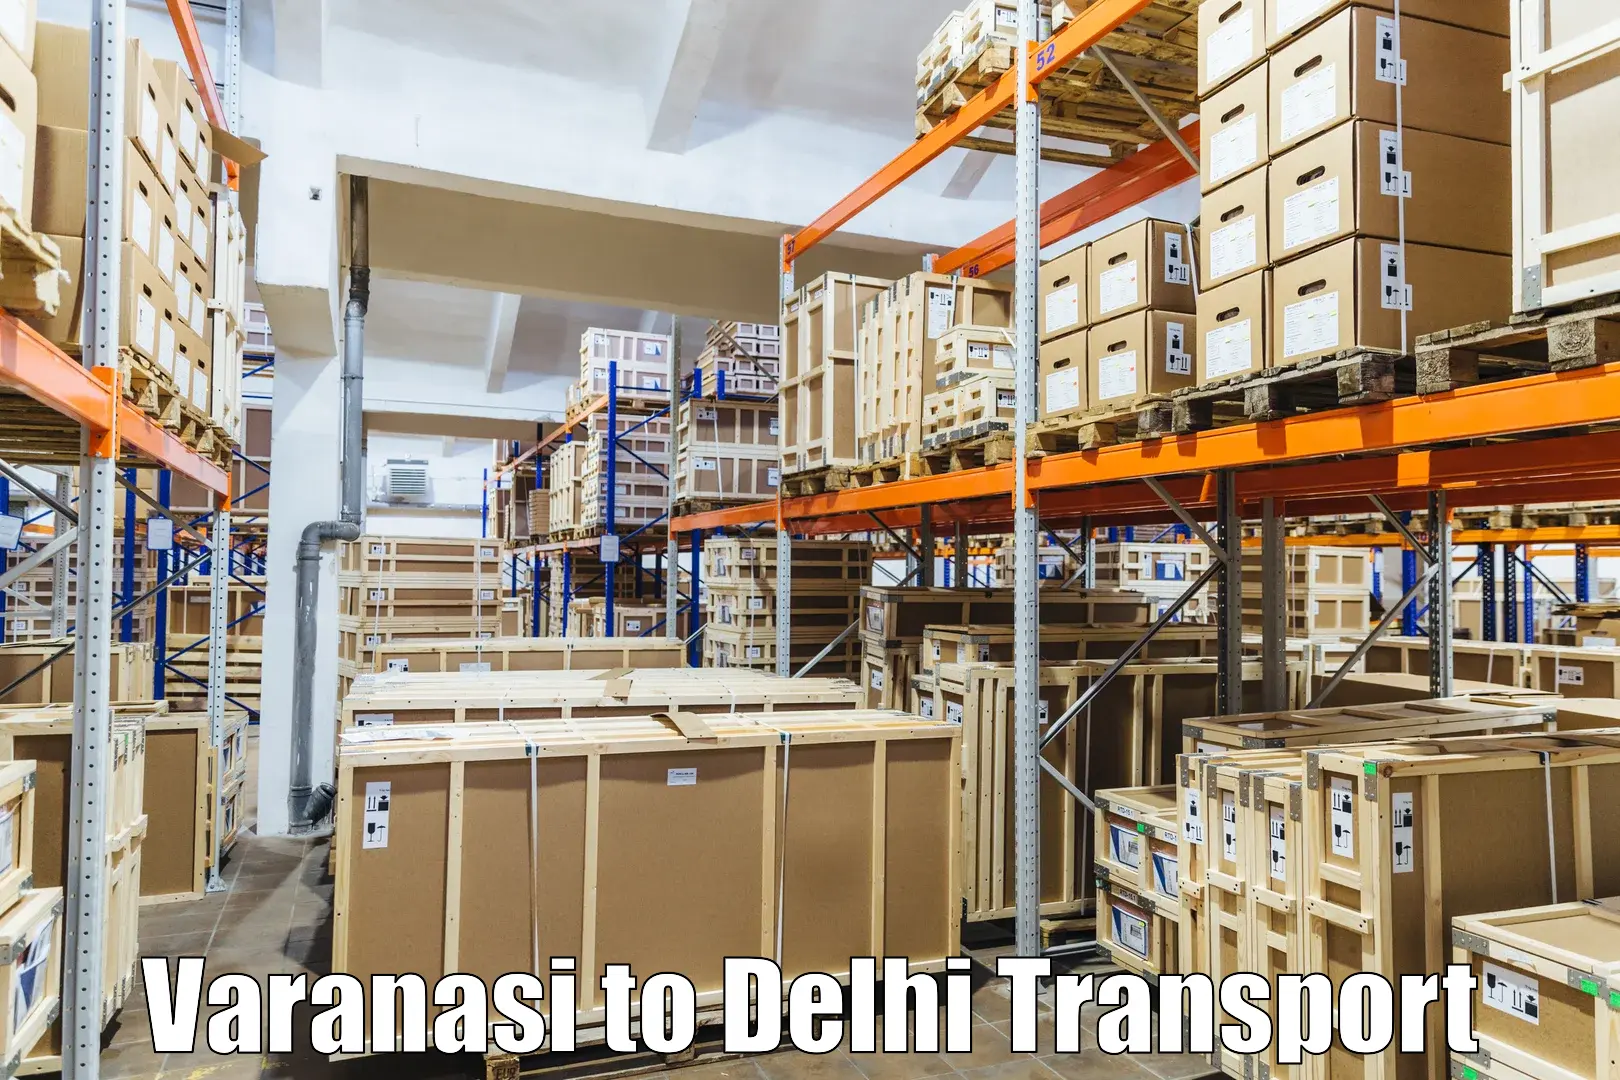 Transport in sharing Varanasi to Jawaharlal Nehru University New Delhi